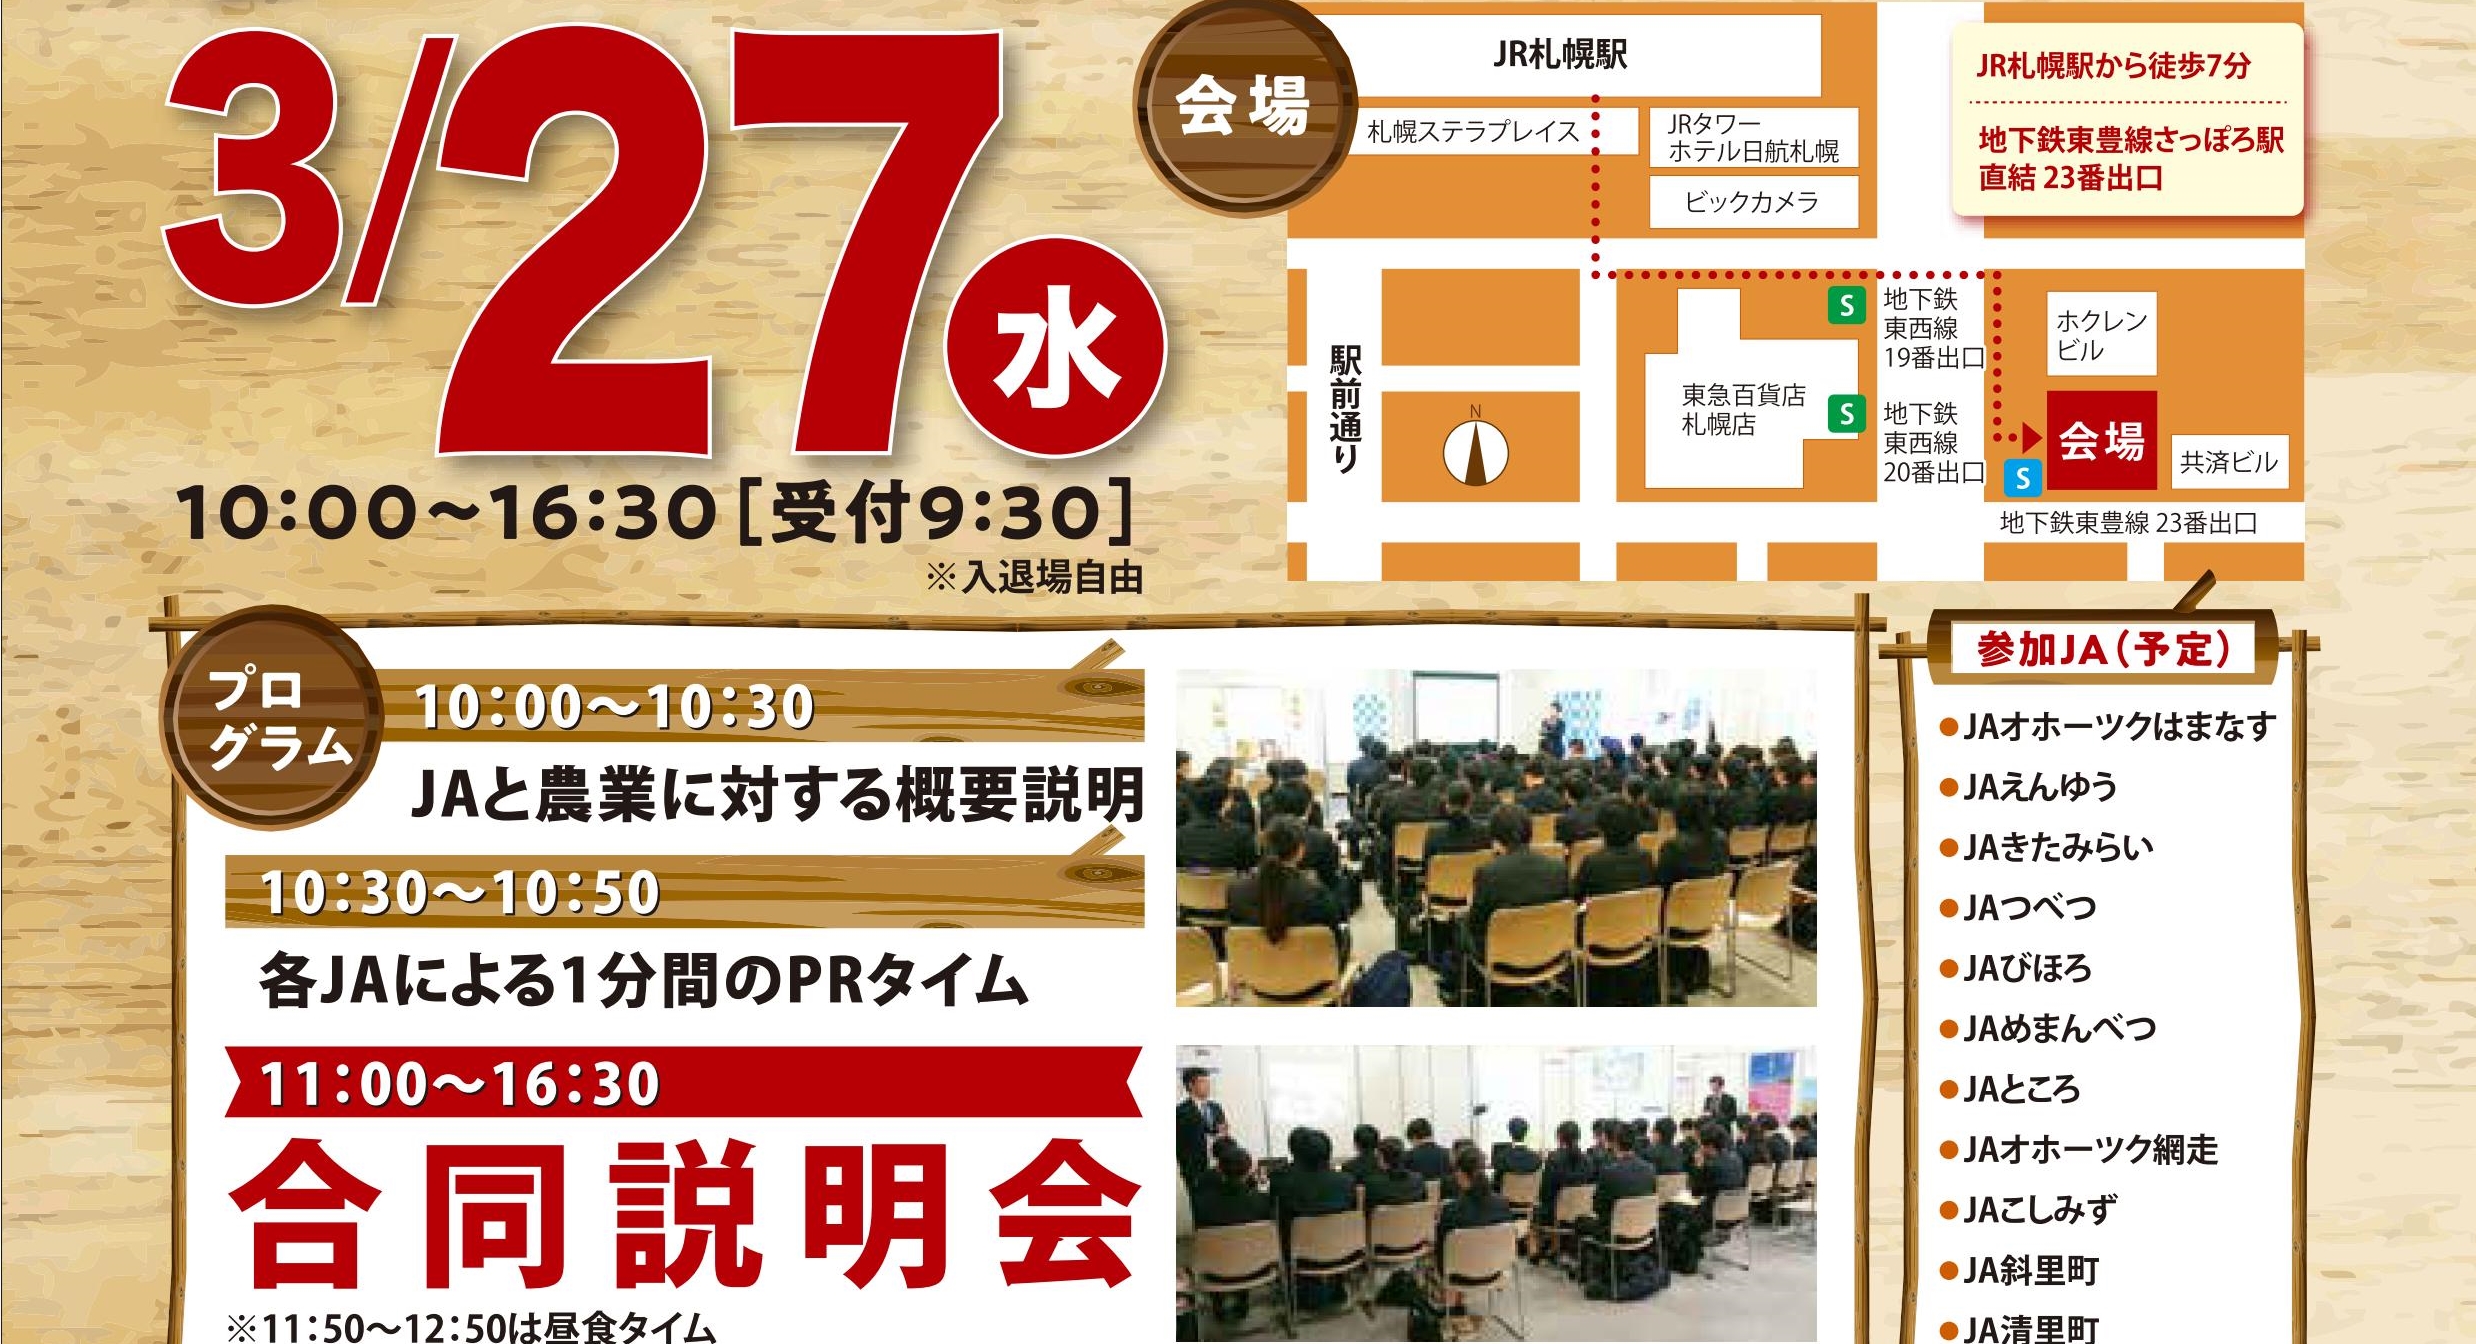 3月27日、札幌でオホーツクJAグループの合同就職説明会を開催します！